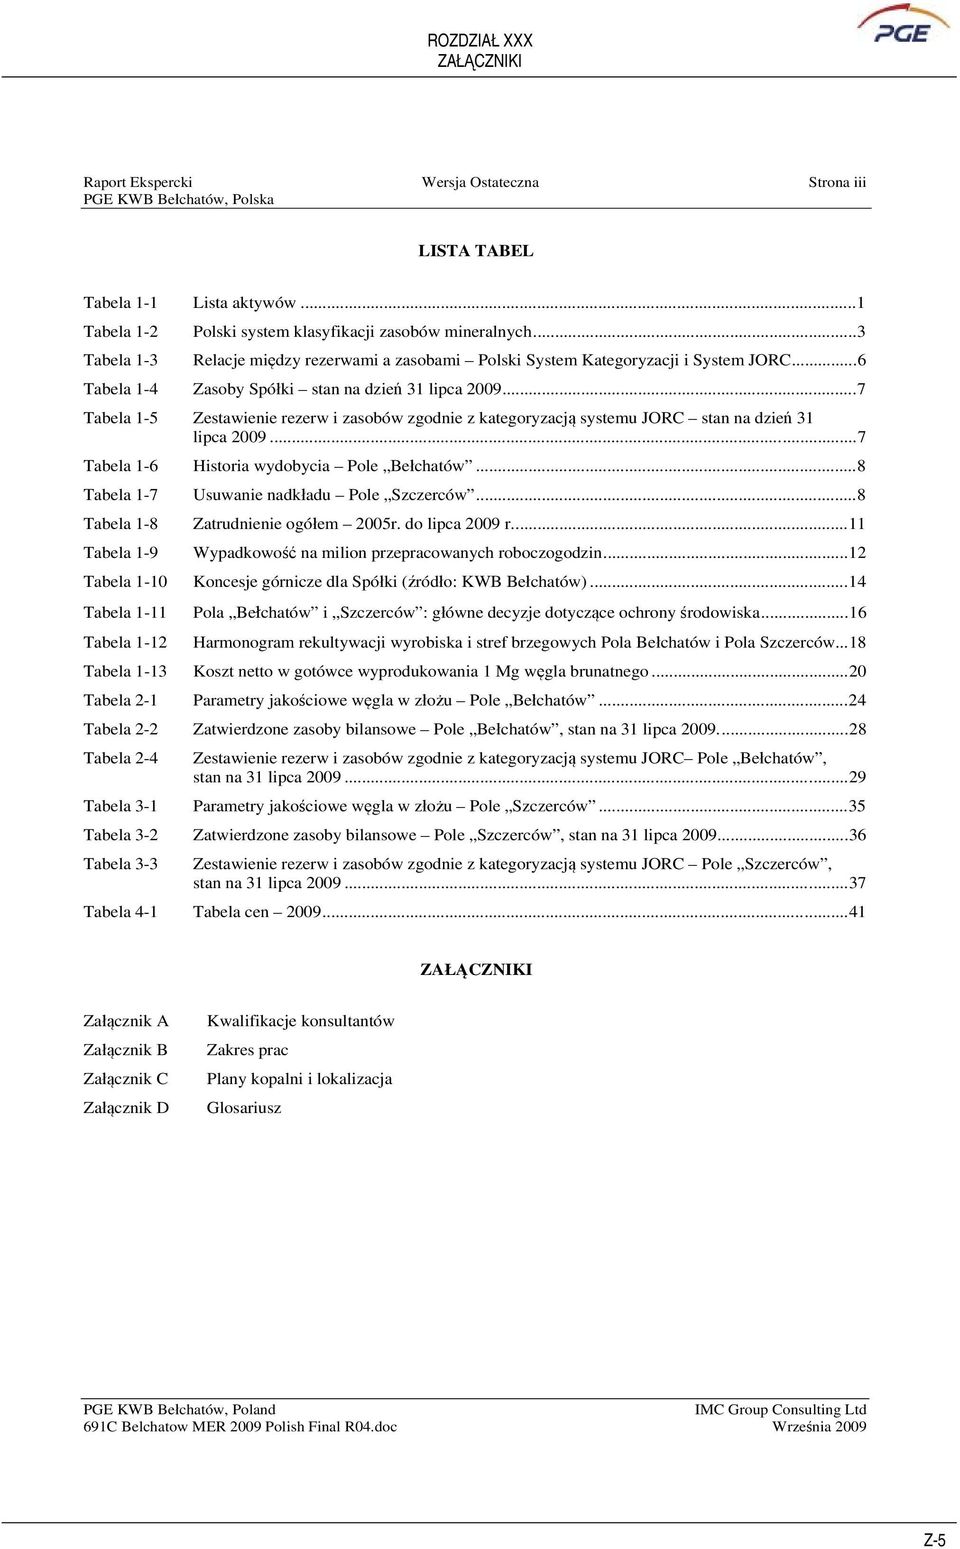 ..7 Tabela 1-5 Zestawienie rezerw i zasobów zgodnie z kategoryzacj systemu JORC stan na dzie 31 lipca 2009...7 Tabela 1-6 Historia wydobycia Pole Bechatów.